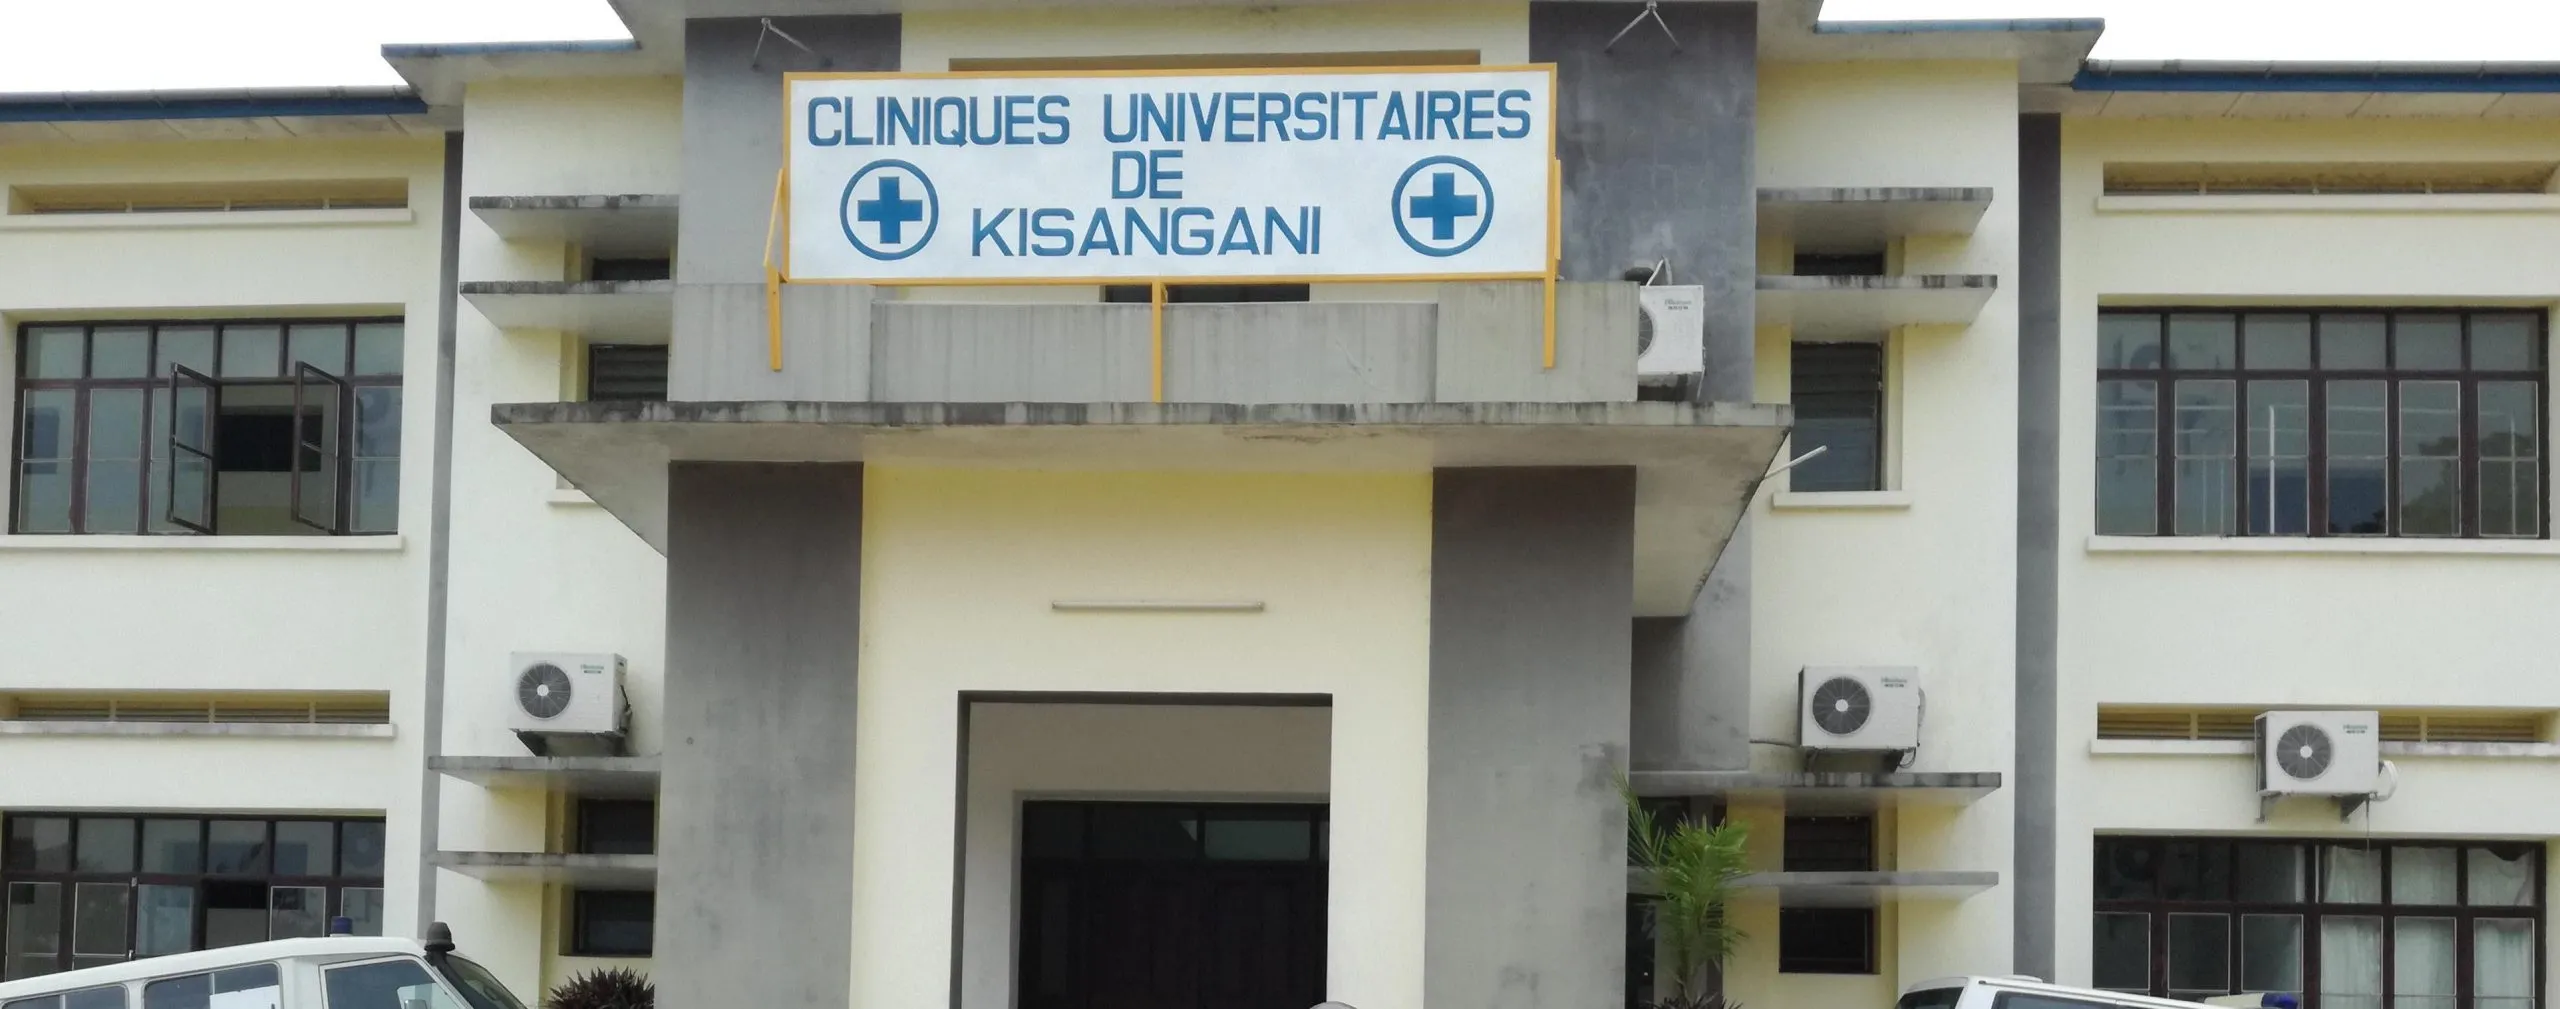 UNIKIS: Le laboratoire des Cliniques Universitaires fait peau neuve